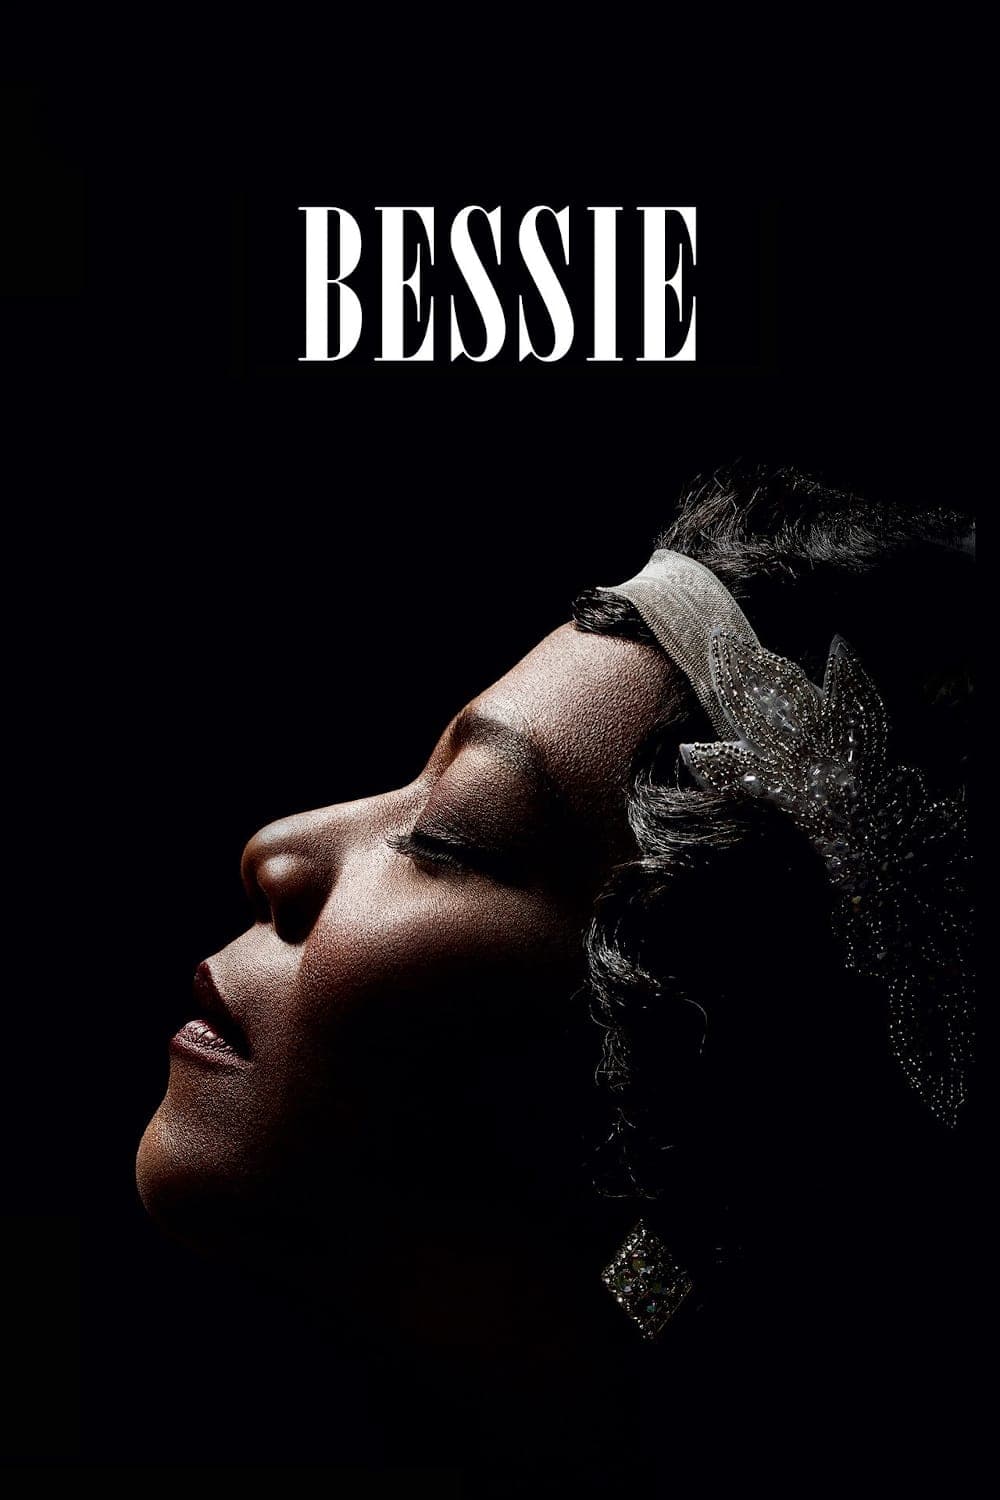 Bessie (2015)